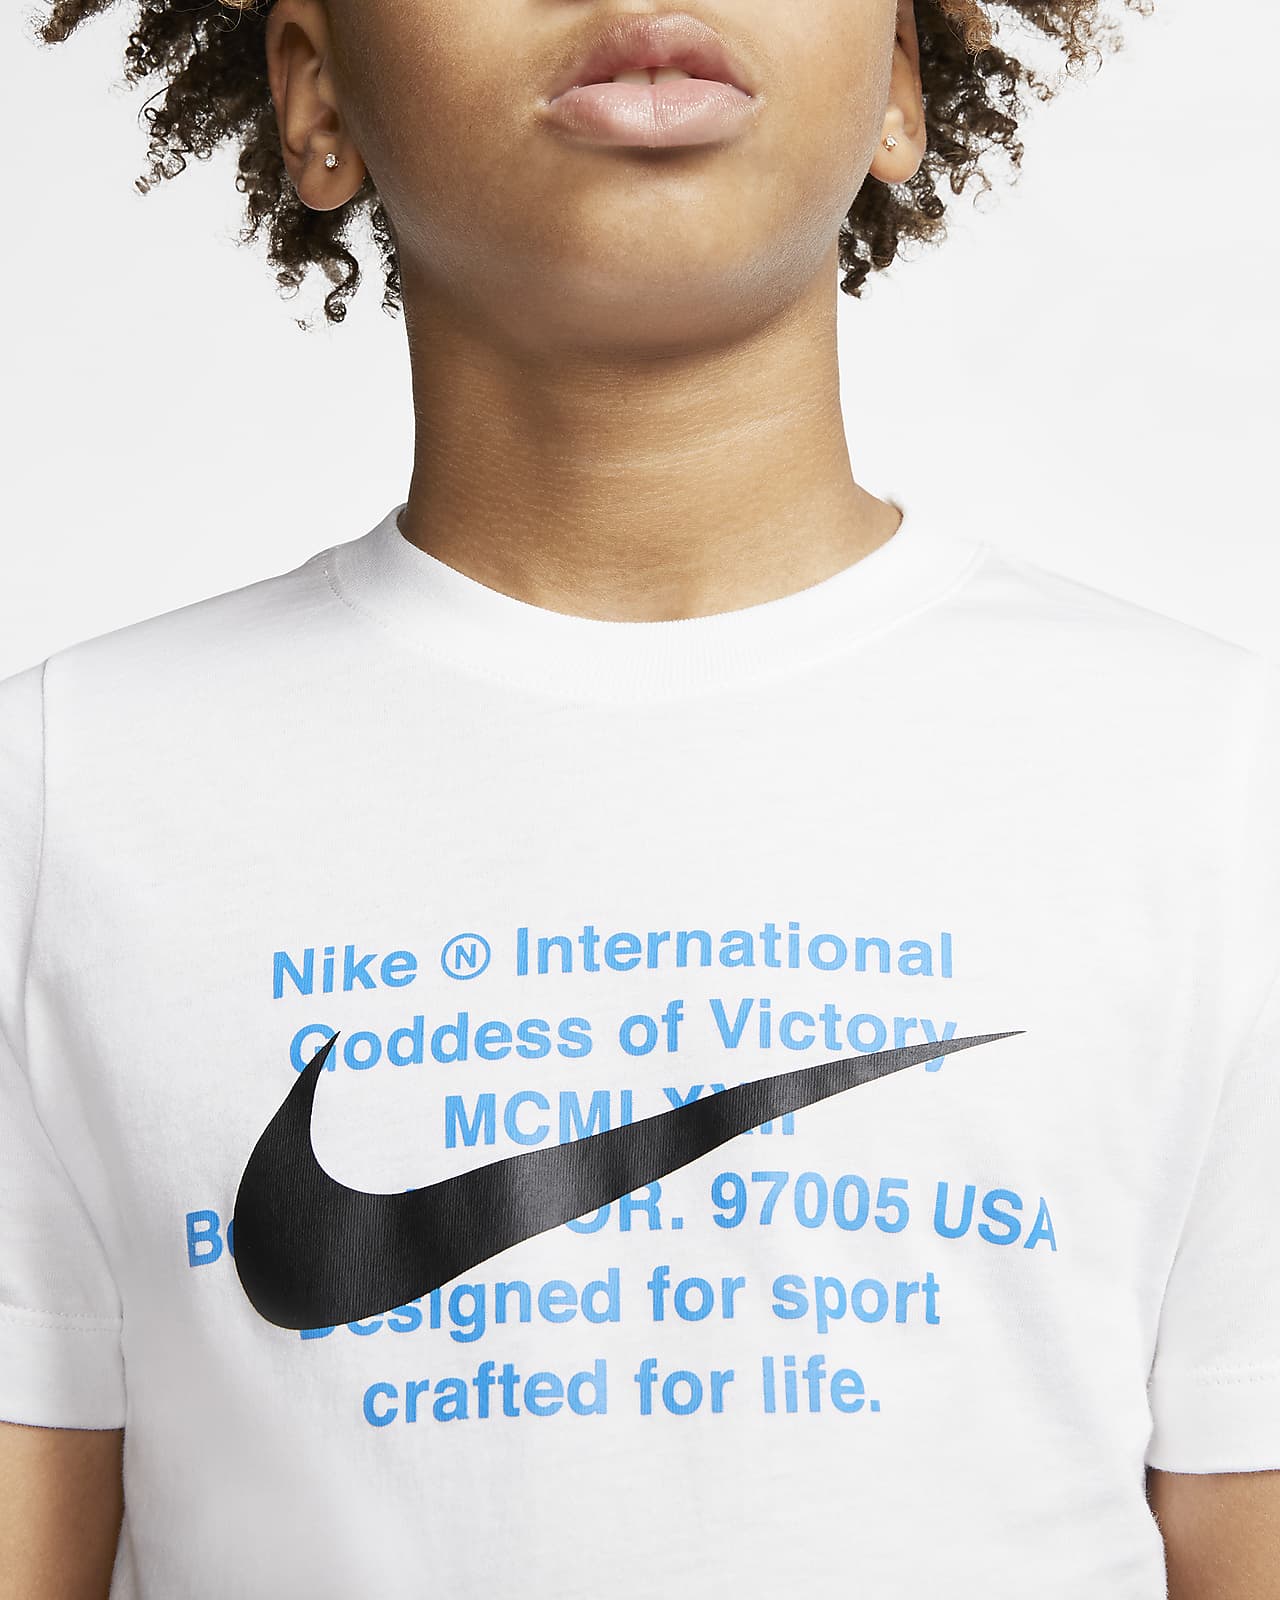 Nike god